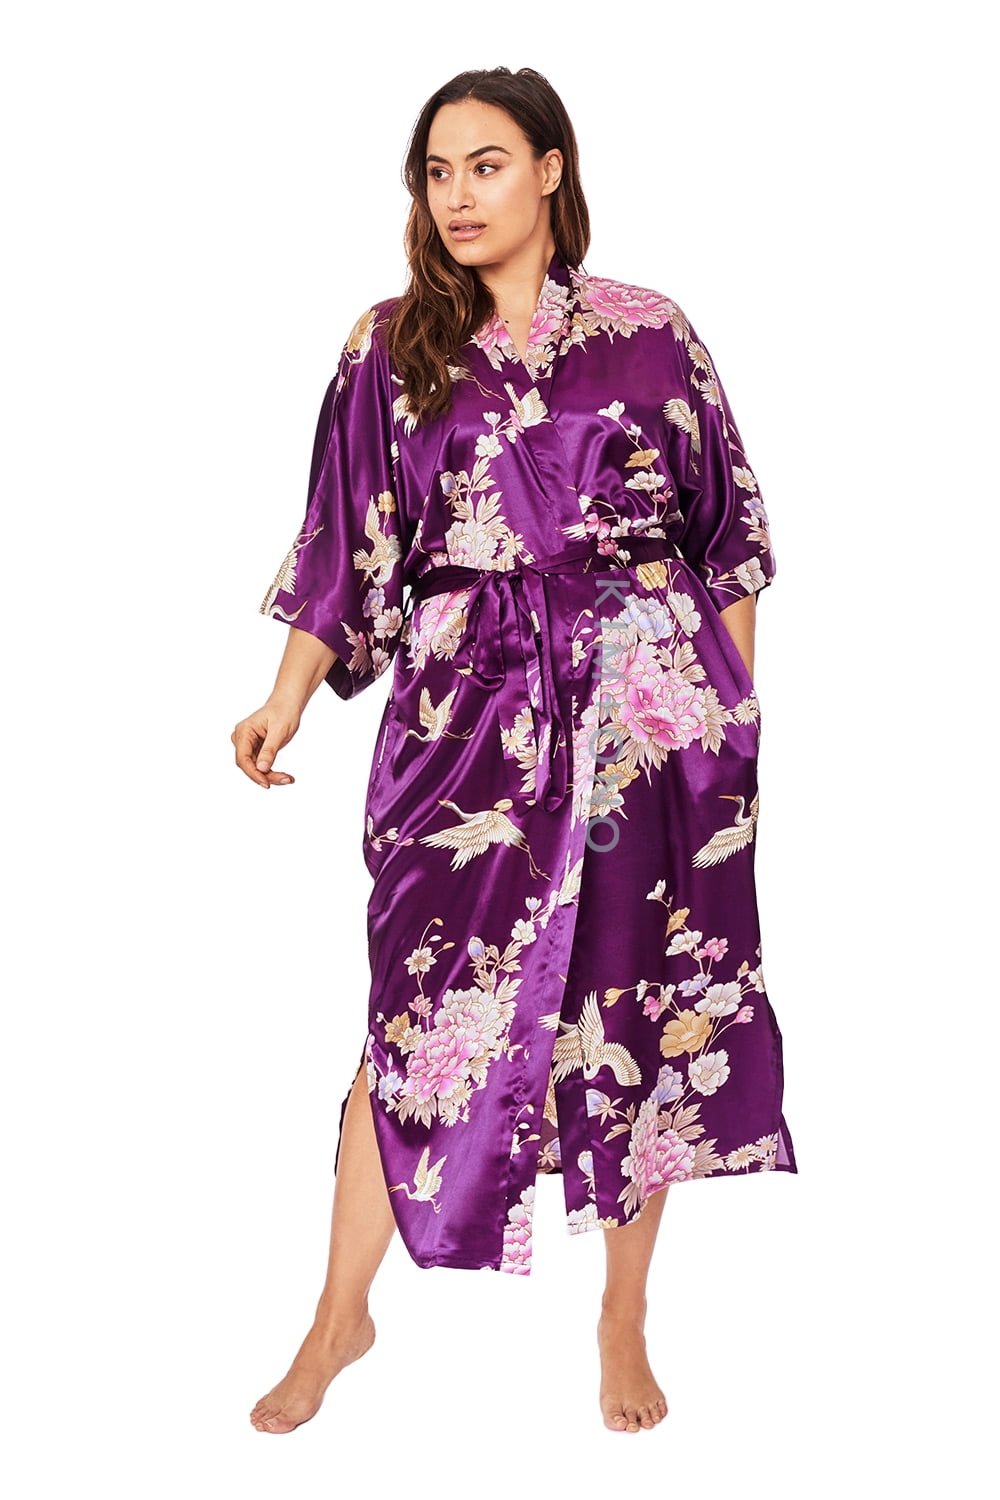 KIM+ONO Plus Size Women's Satin Kimono Robe Long Floral 